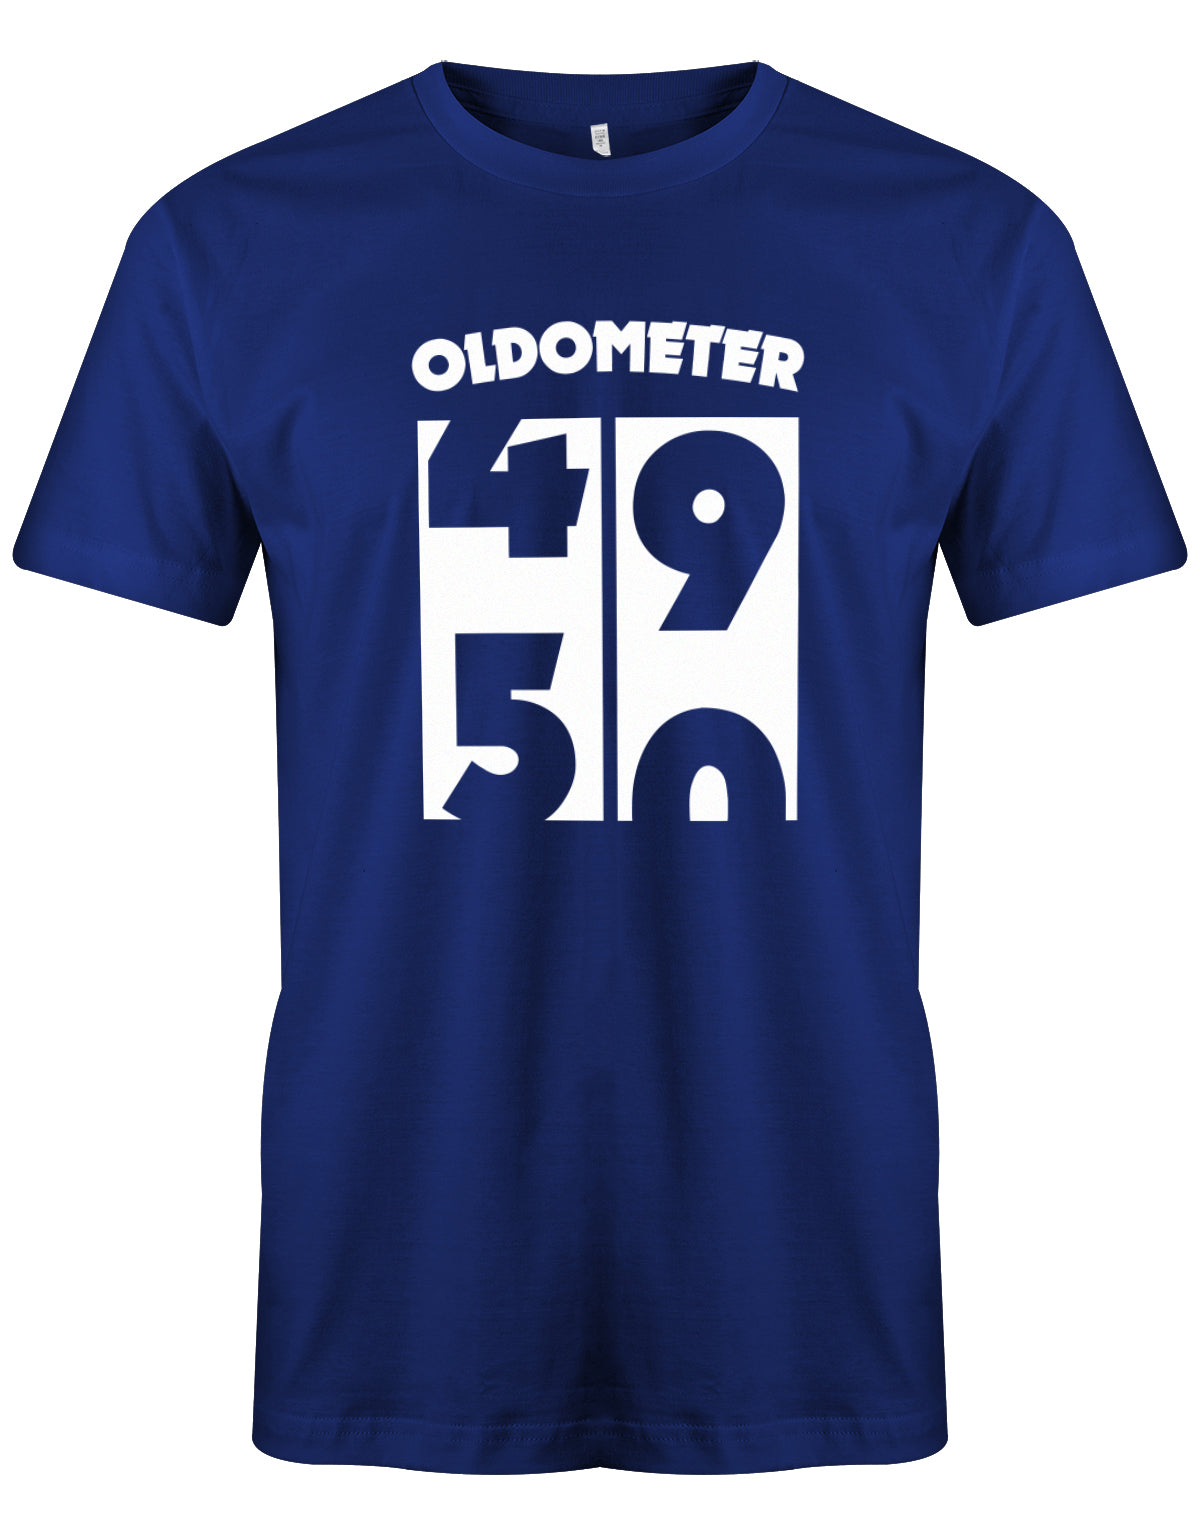 Lustiges T-Shirt zum 50 Geburtstag für den Mann Bedruckt mit Oldometer von 49 wechsel zu 50 Jahren. Royalblau